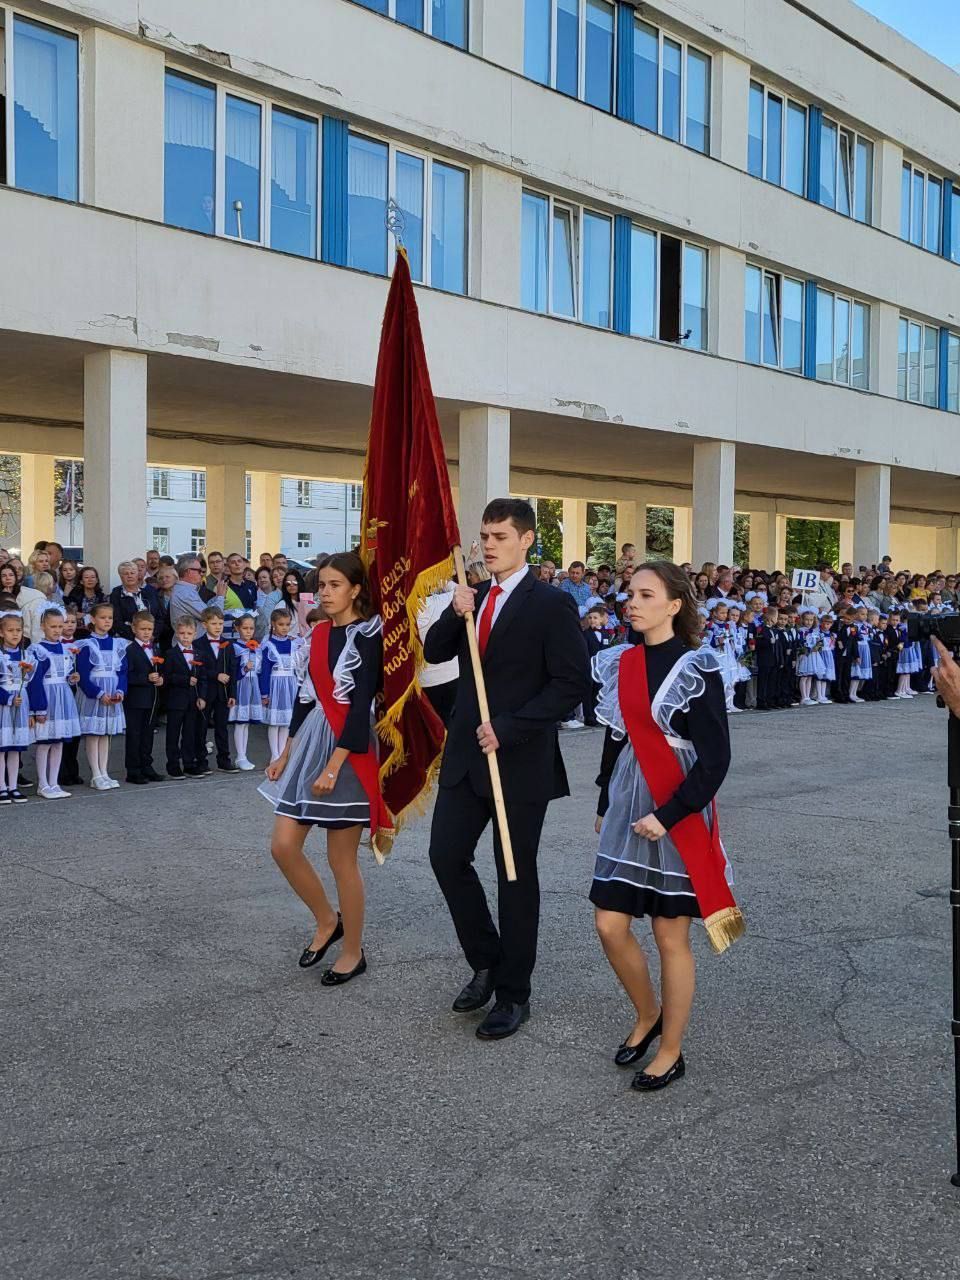 Член Правления Ассоциации юристов России принял участие в открытии торжественной линейки, посвящённой Дню знаний